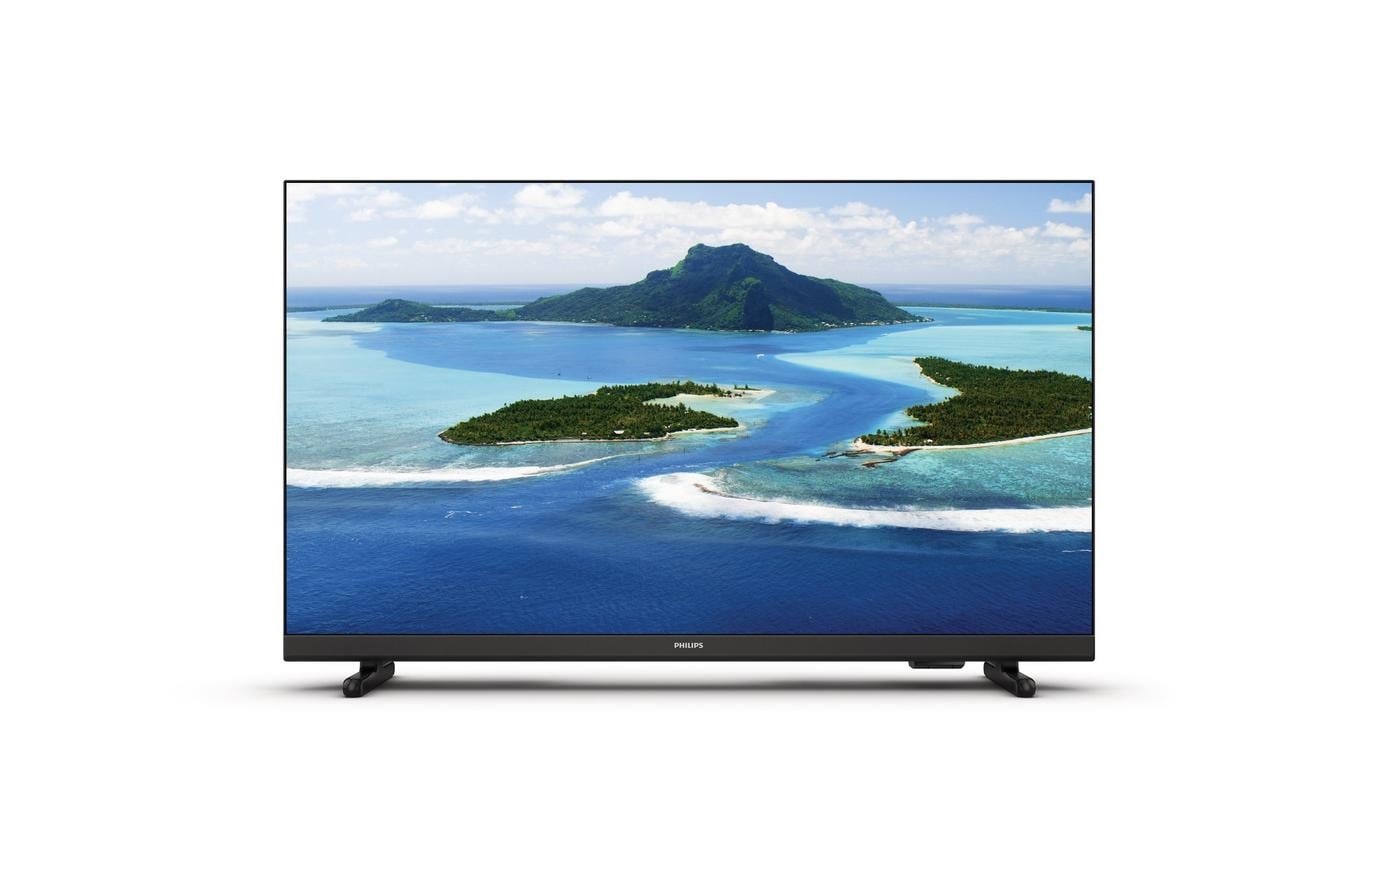 Philips TV 32PHS5507/12 32, 1366 x 768 (WXGA), LED-LCD